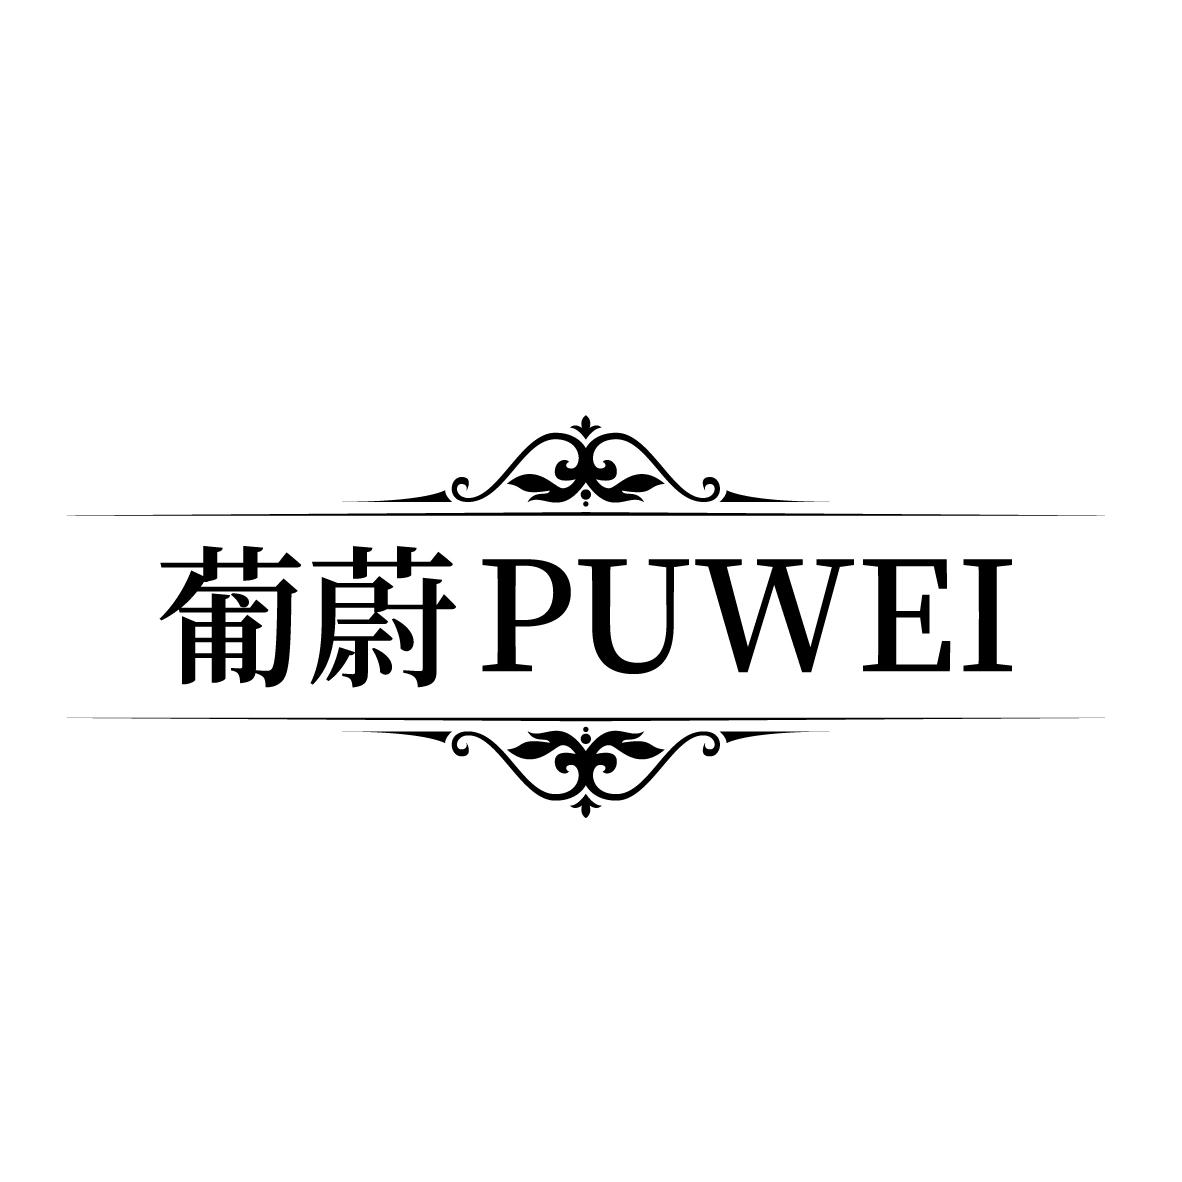 葡蔚
PUWEI草莓酒商标转让费用买卖交易流程